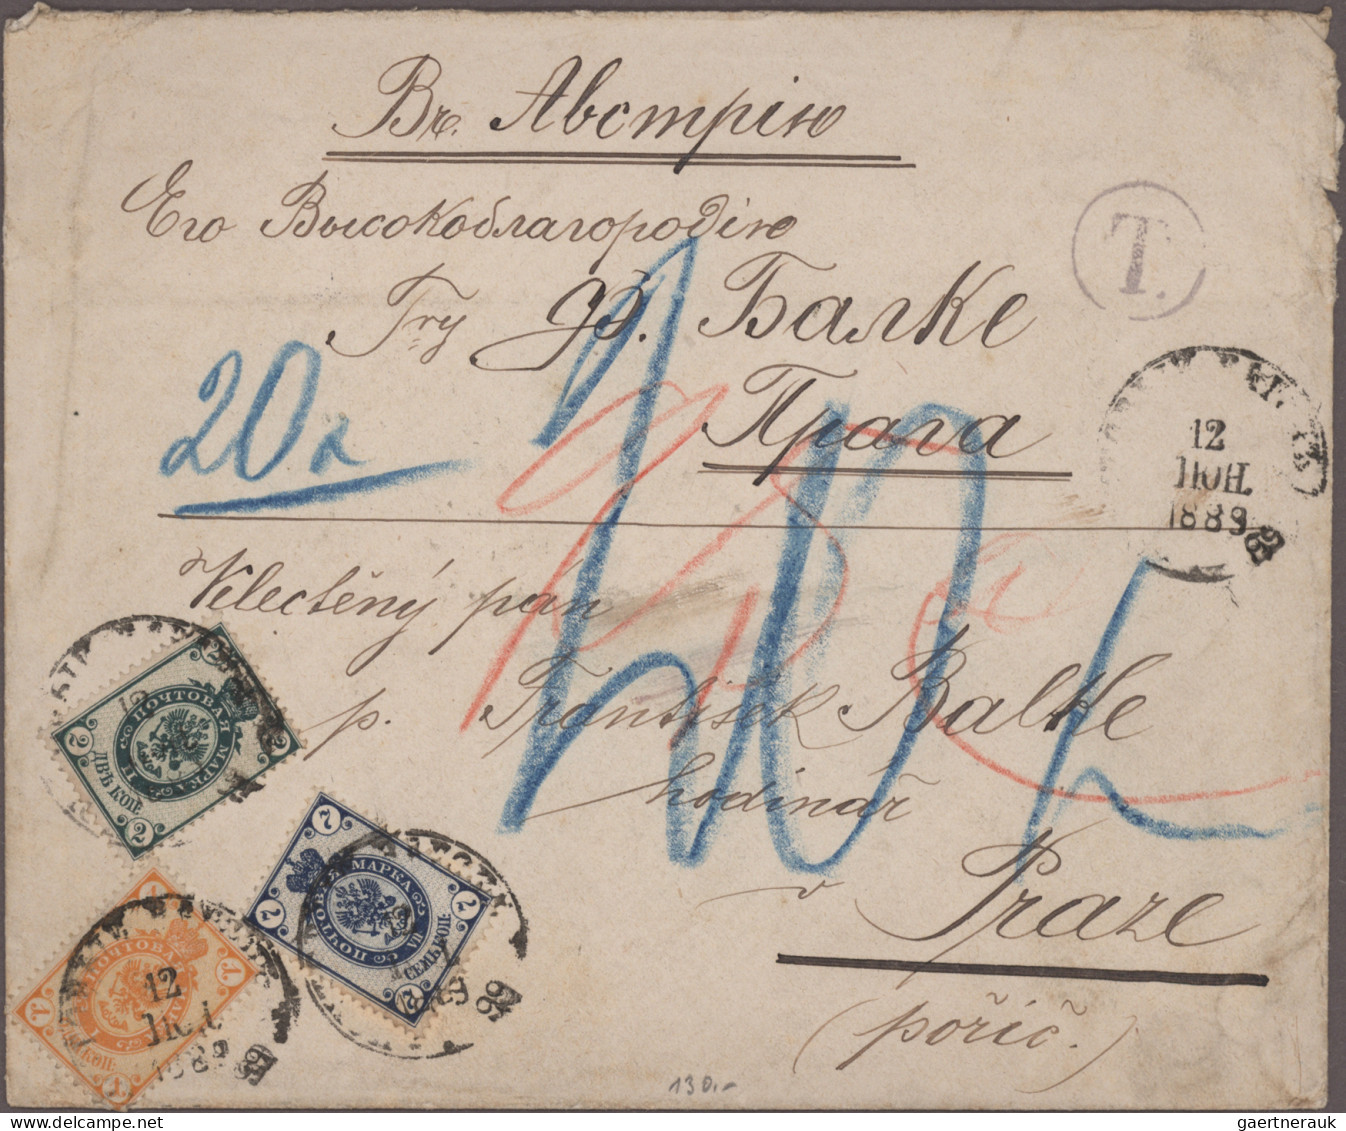 Österreich: 1850/1889, Spezialsammlung von 32 Belegen "Nachtaxierungen", dabei a